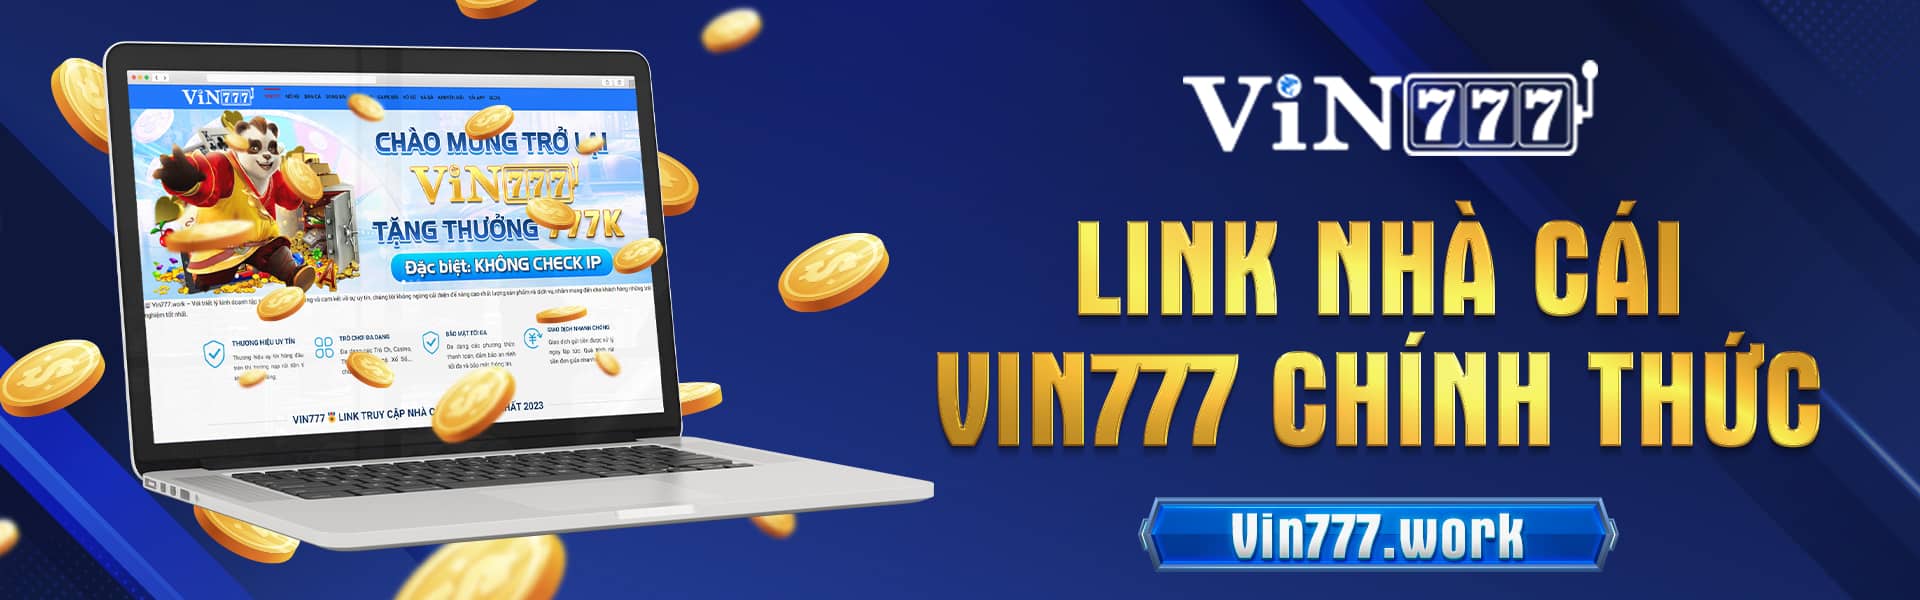 Banner Link nhà cái chính thức Vin777